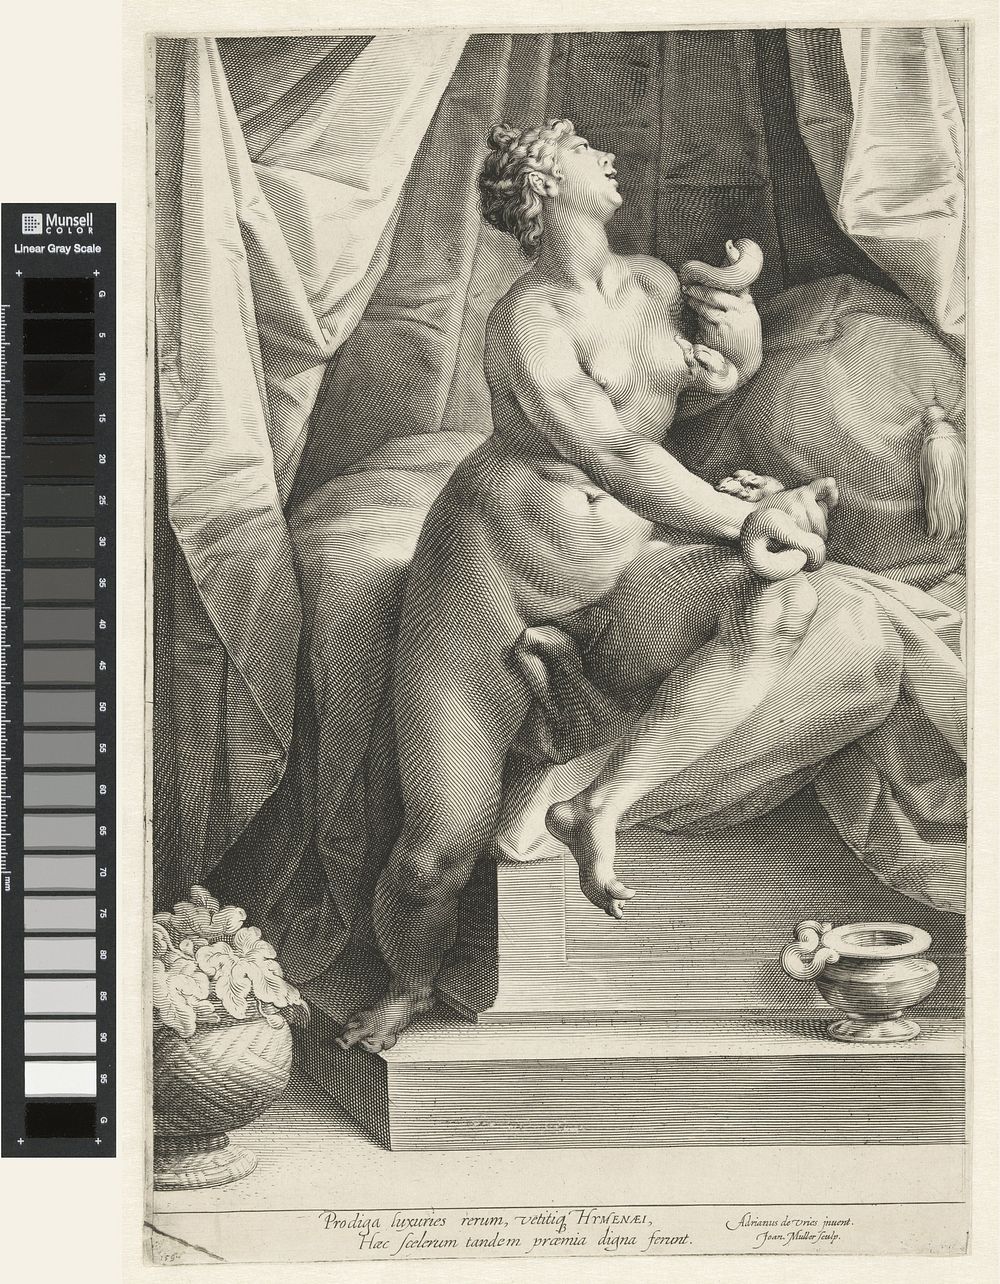 Dood van Cleopatra (1596 - 1600) by Jan Harmensz Muller and Adriaen de Vries